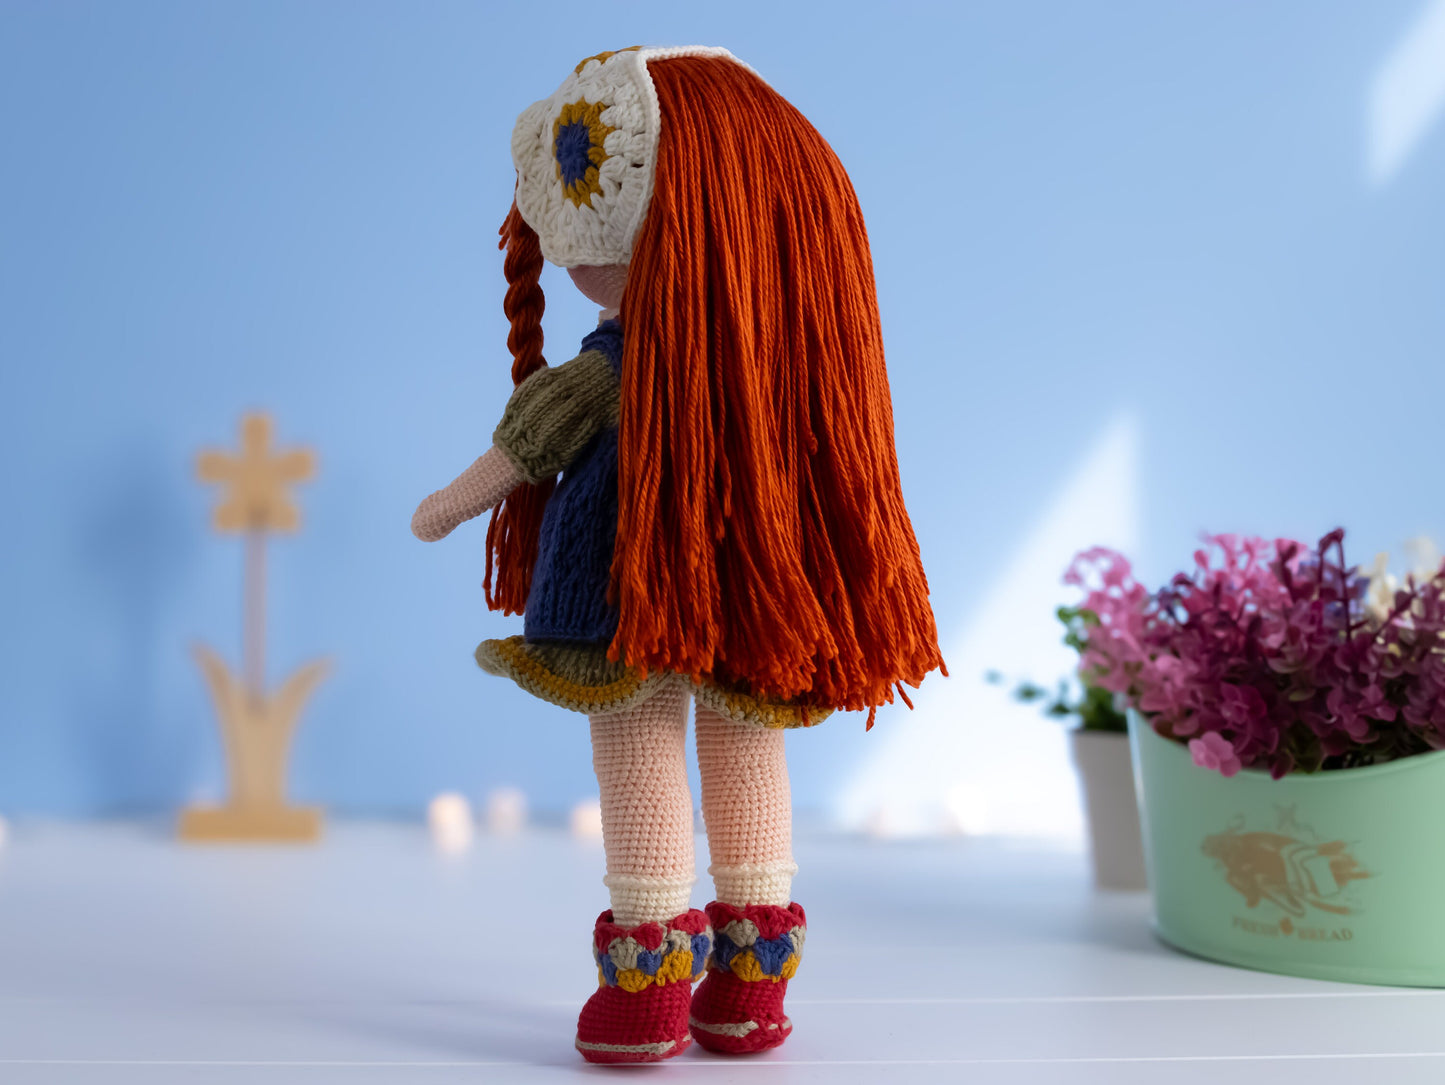 Crochet Amigurumi, Knitted Doll, Amigurumi Doll, Knitted Doll, red haired doll, Handmade Doll, Stuffed Doll, Yarn Dolls, Heirloom Dolls